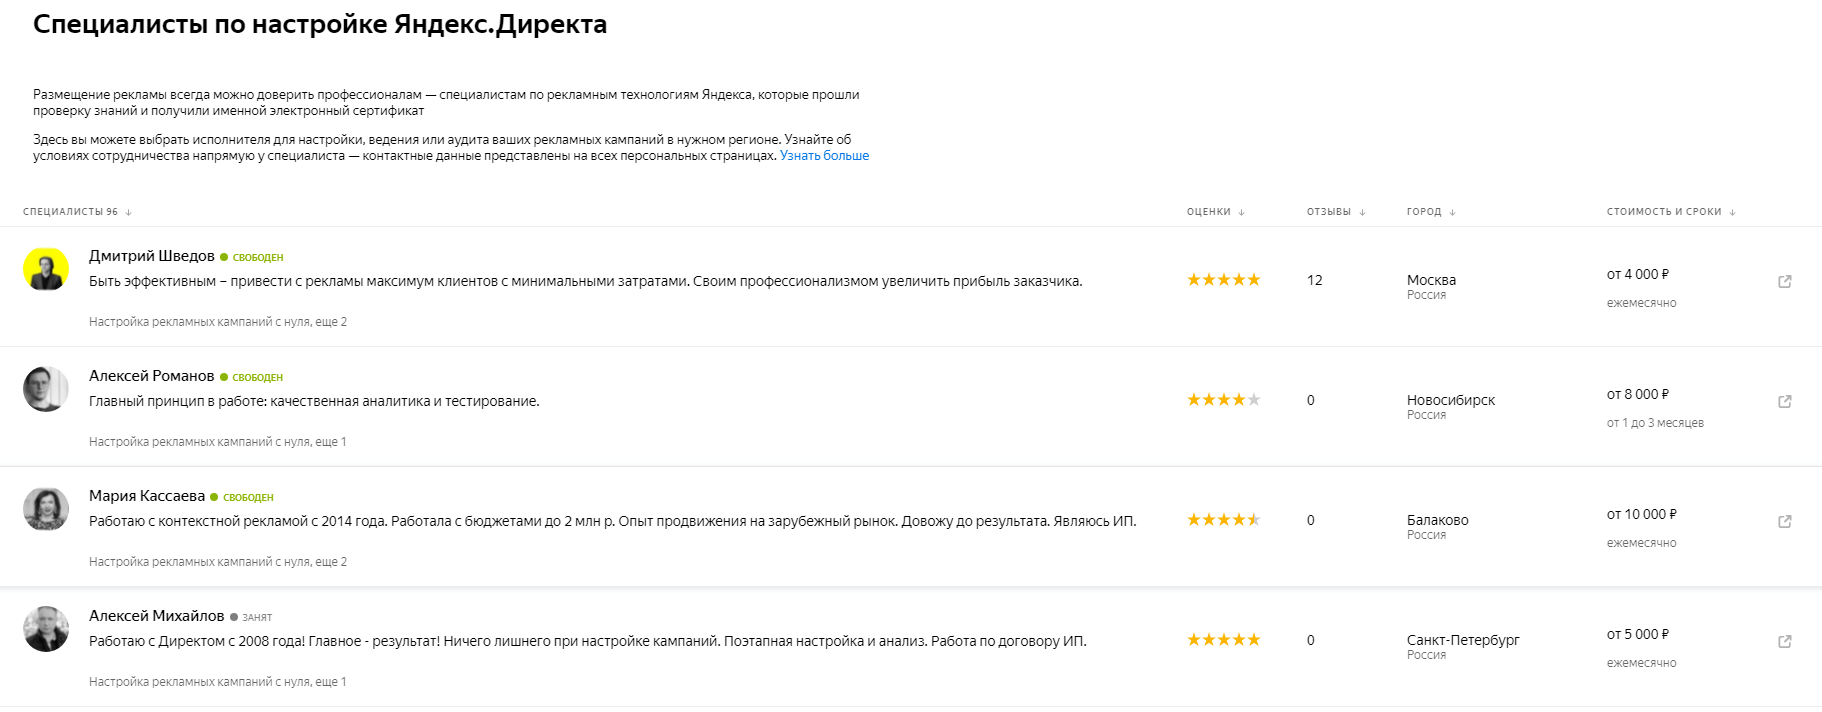 Специалисты по настройке Яндекс.Директа в базе специалистов Яндекса